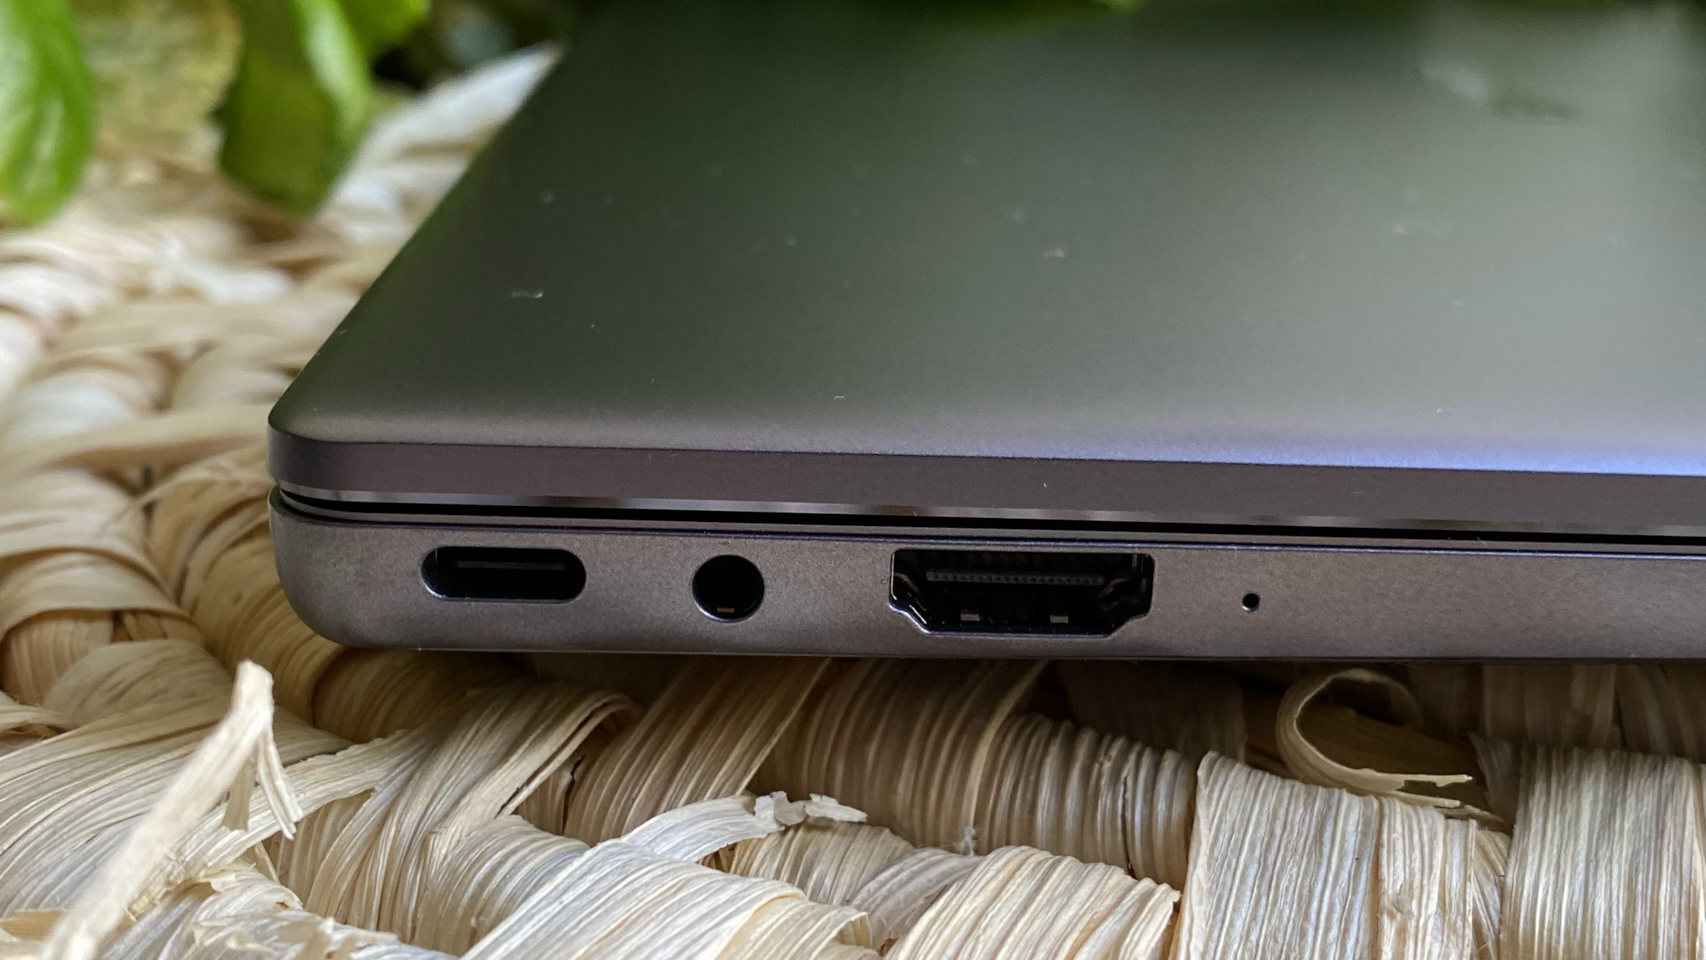 Junto con el USB-C de carga, el MateBook ofrece HDMI y jack de audio